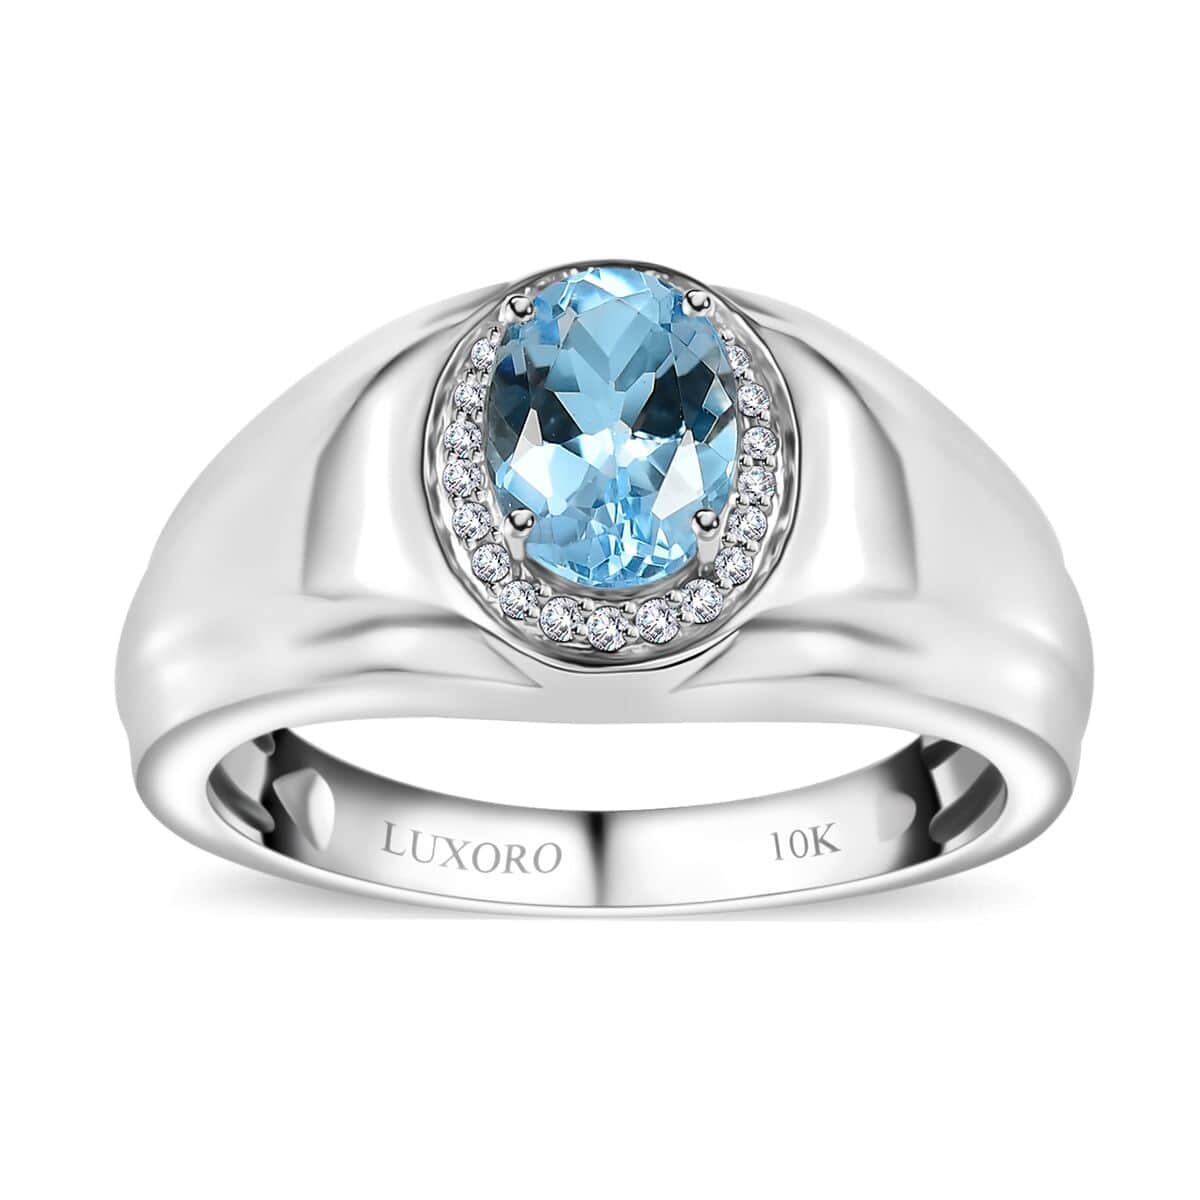 Luxoro 10K White Gold Premium Santa Maria Aquamarine and G-H I2 Diamond Men's Ring (Size 10.0) 6.15 Grams 1.20 ctw image number 0